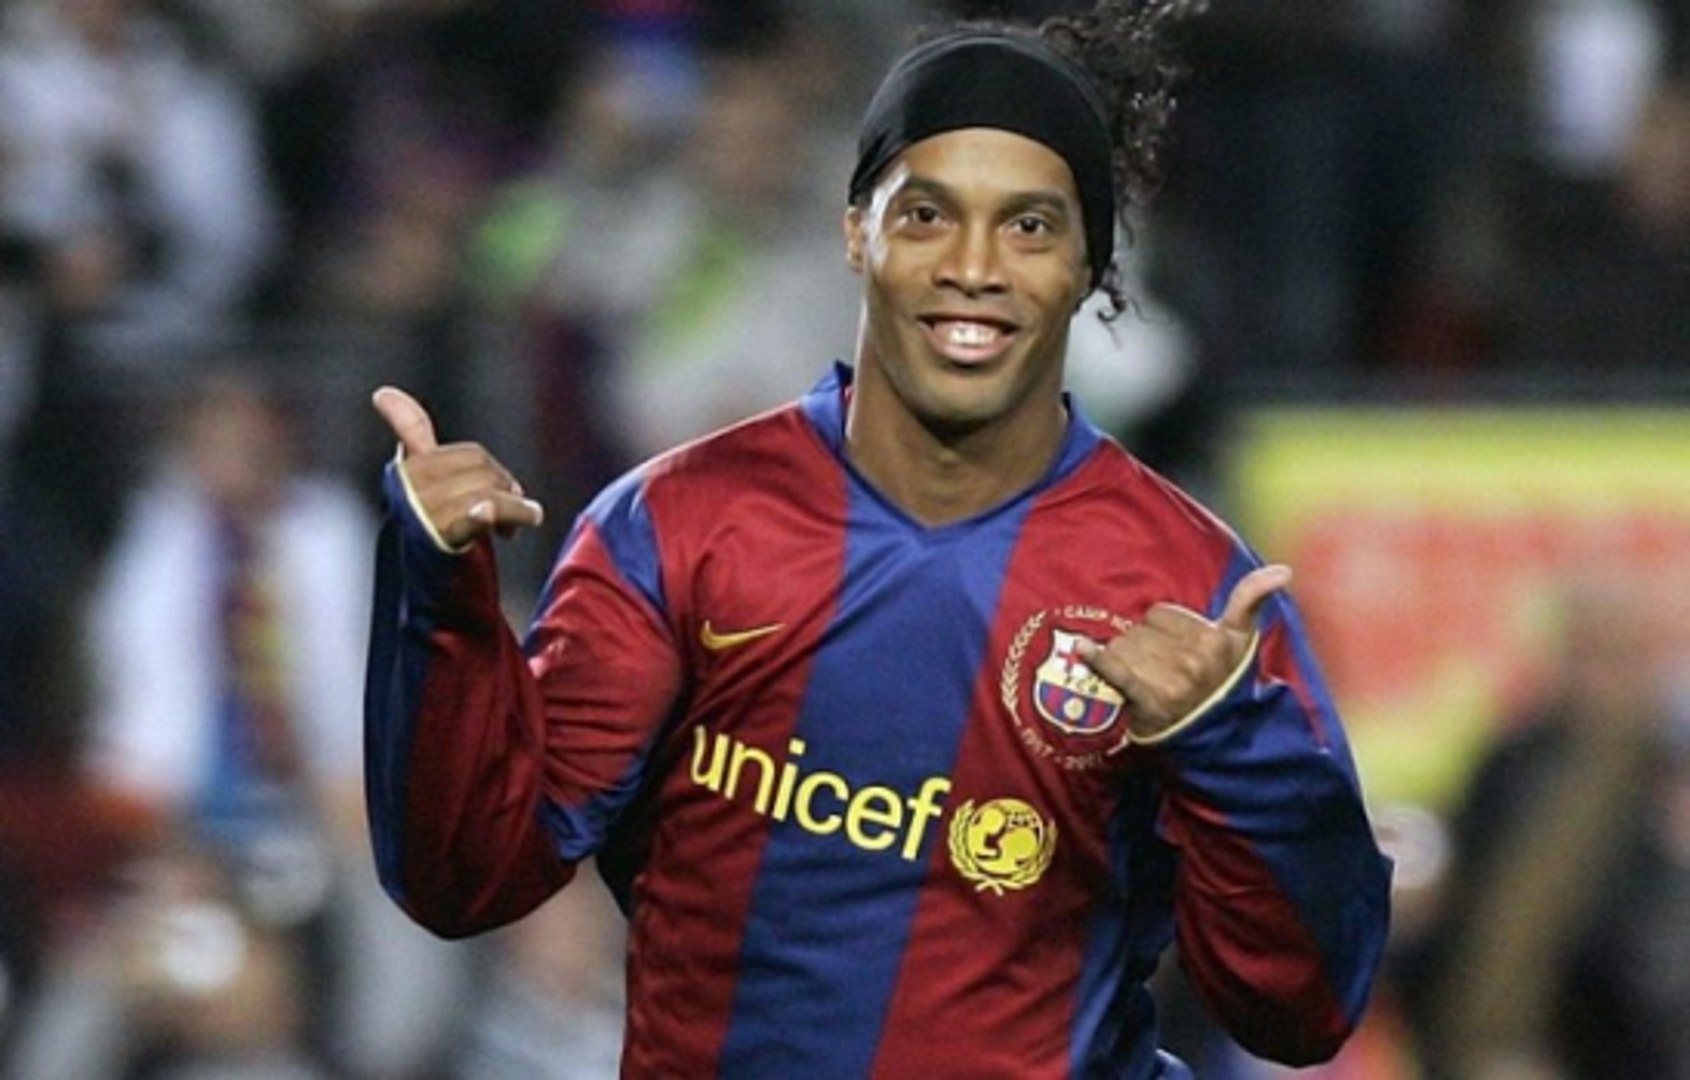 Nos 39 anos de Ronaldinho Gaúcho, recorde em vídeos alguns